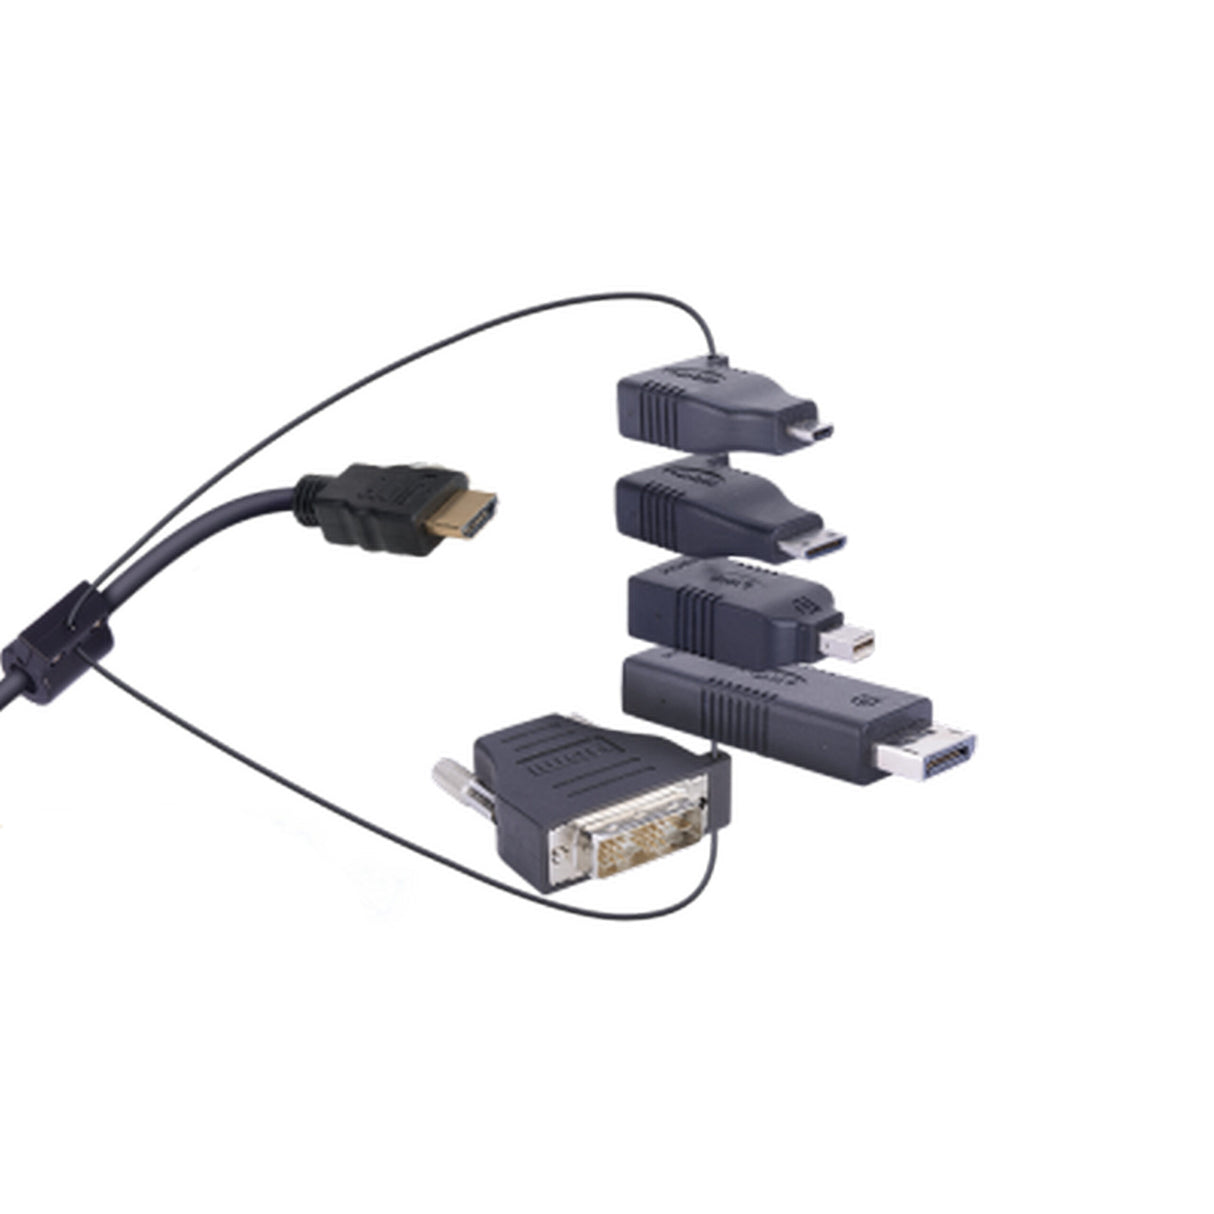 DigitaLinx DL-AR-E03 HDMI Adapter Ring